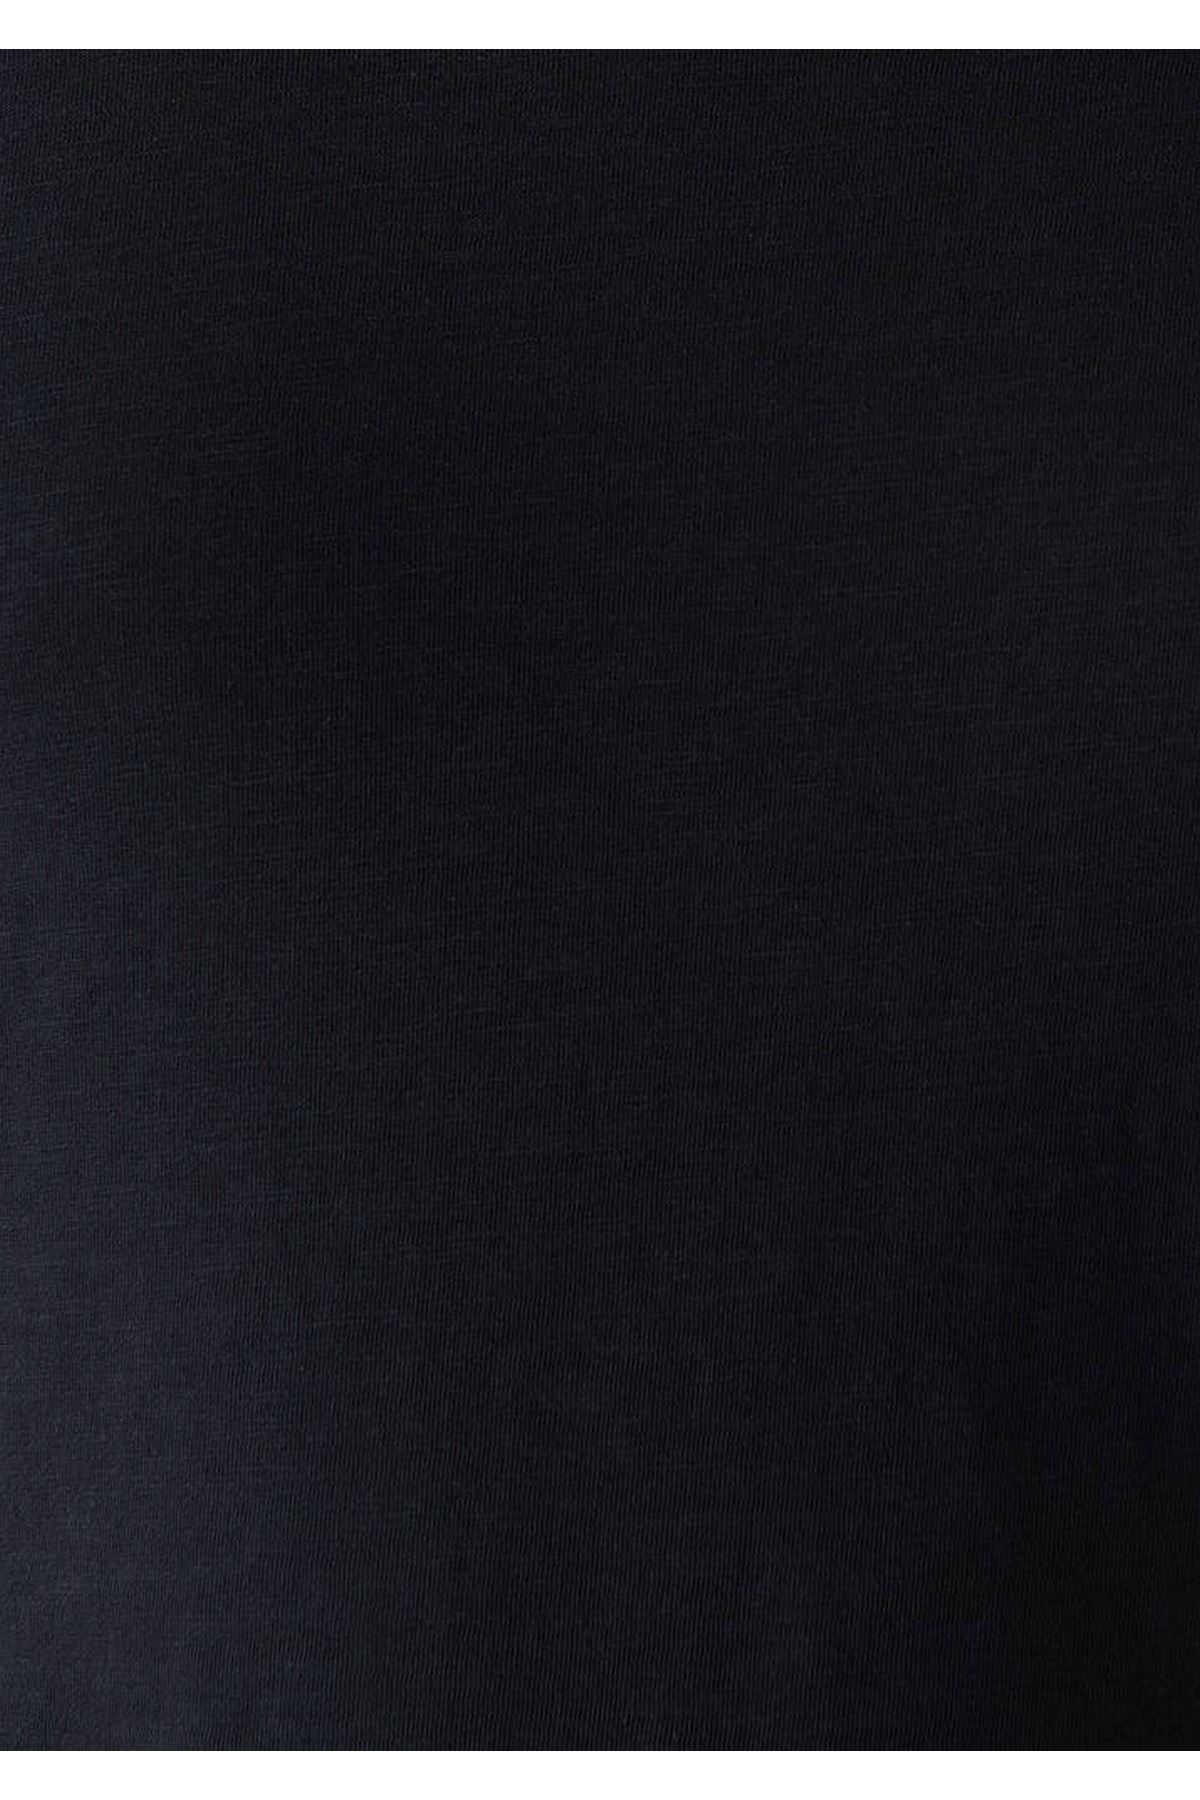 Mavi Erkek Siyah Tişört - M064681-900